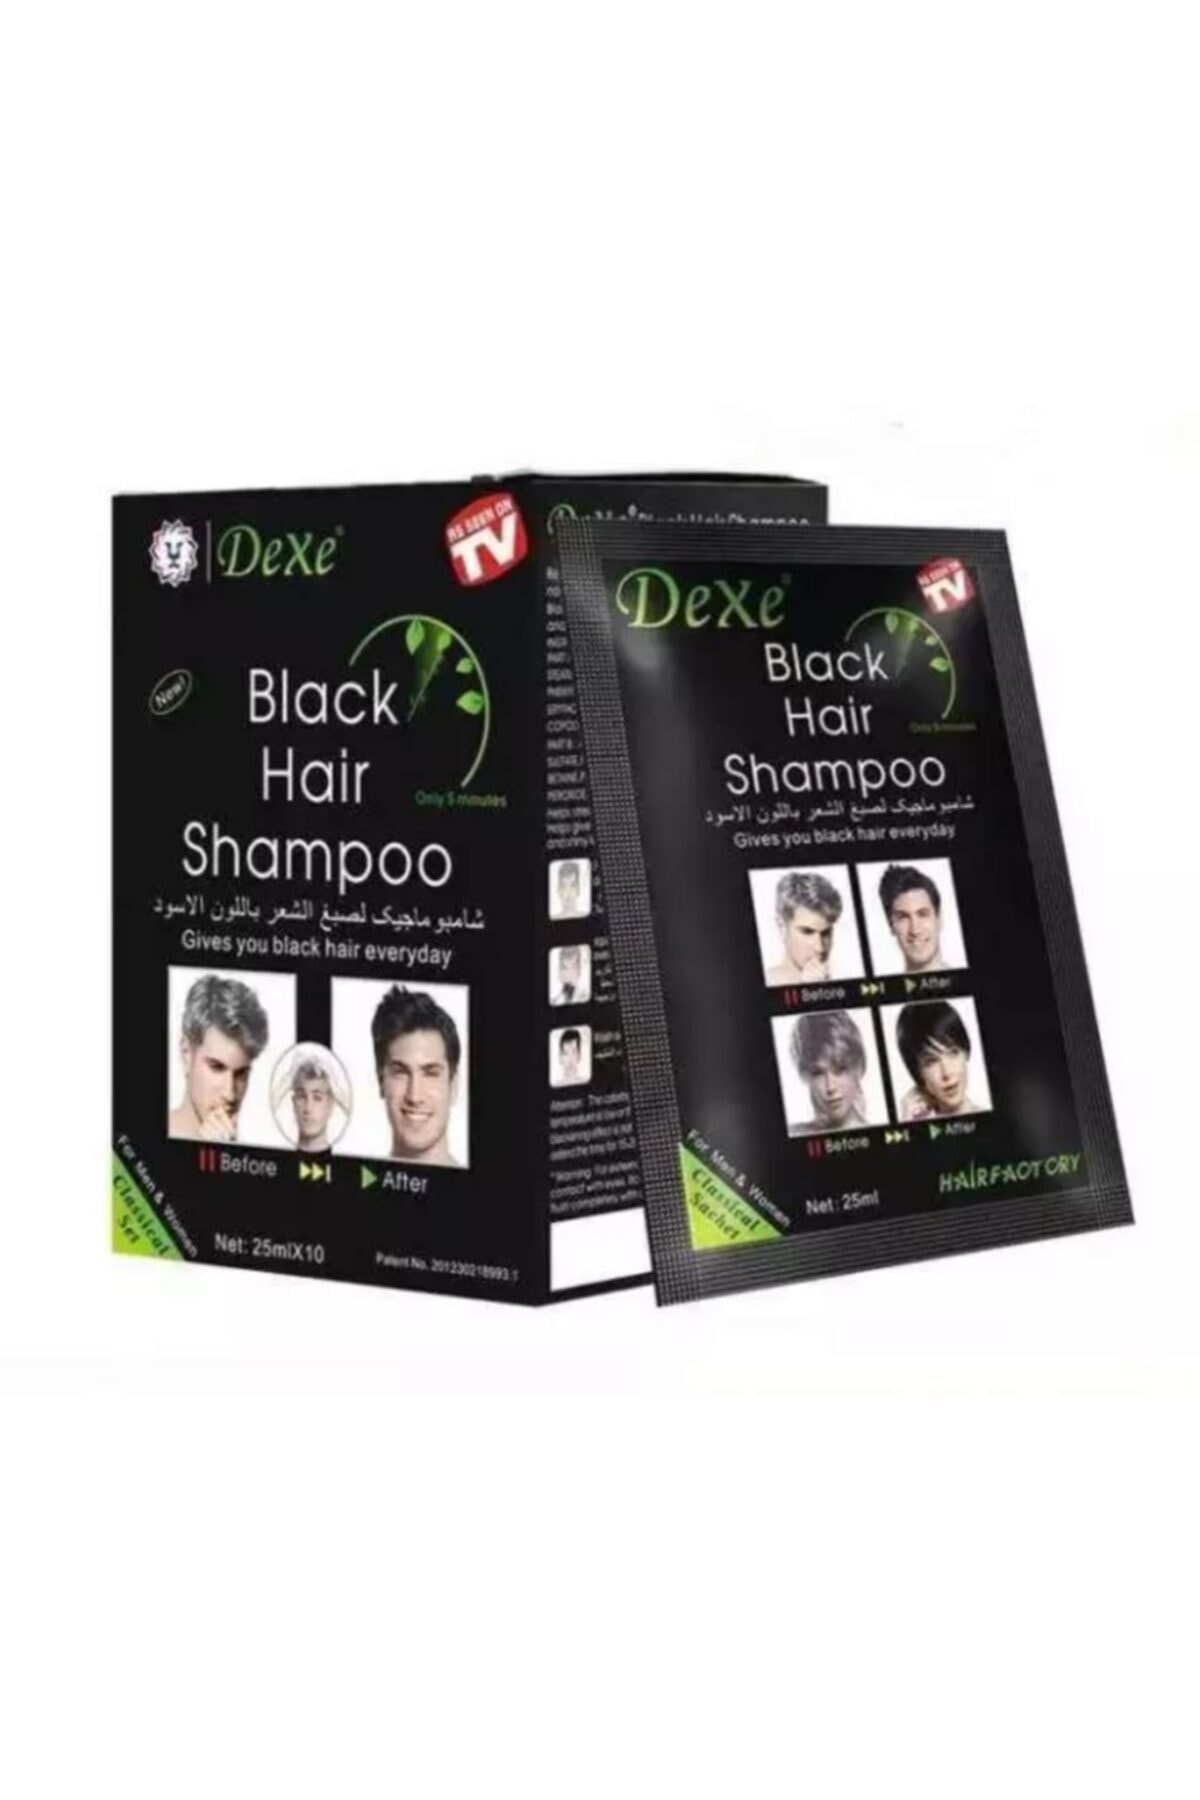 Dexe Beyaz Saç Giderici Şampuan (black Hair Shampoo) 10x25ml